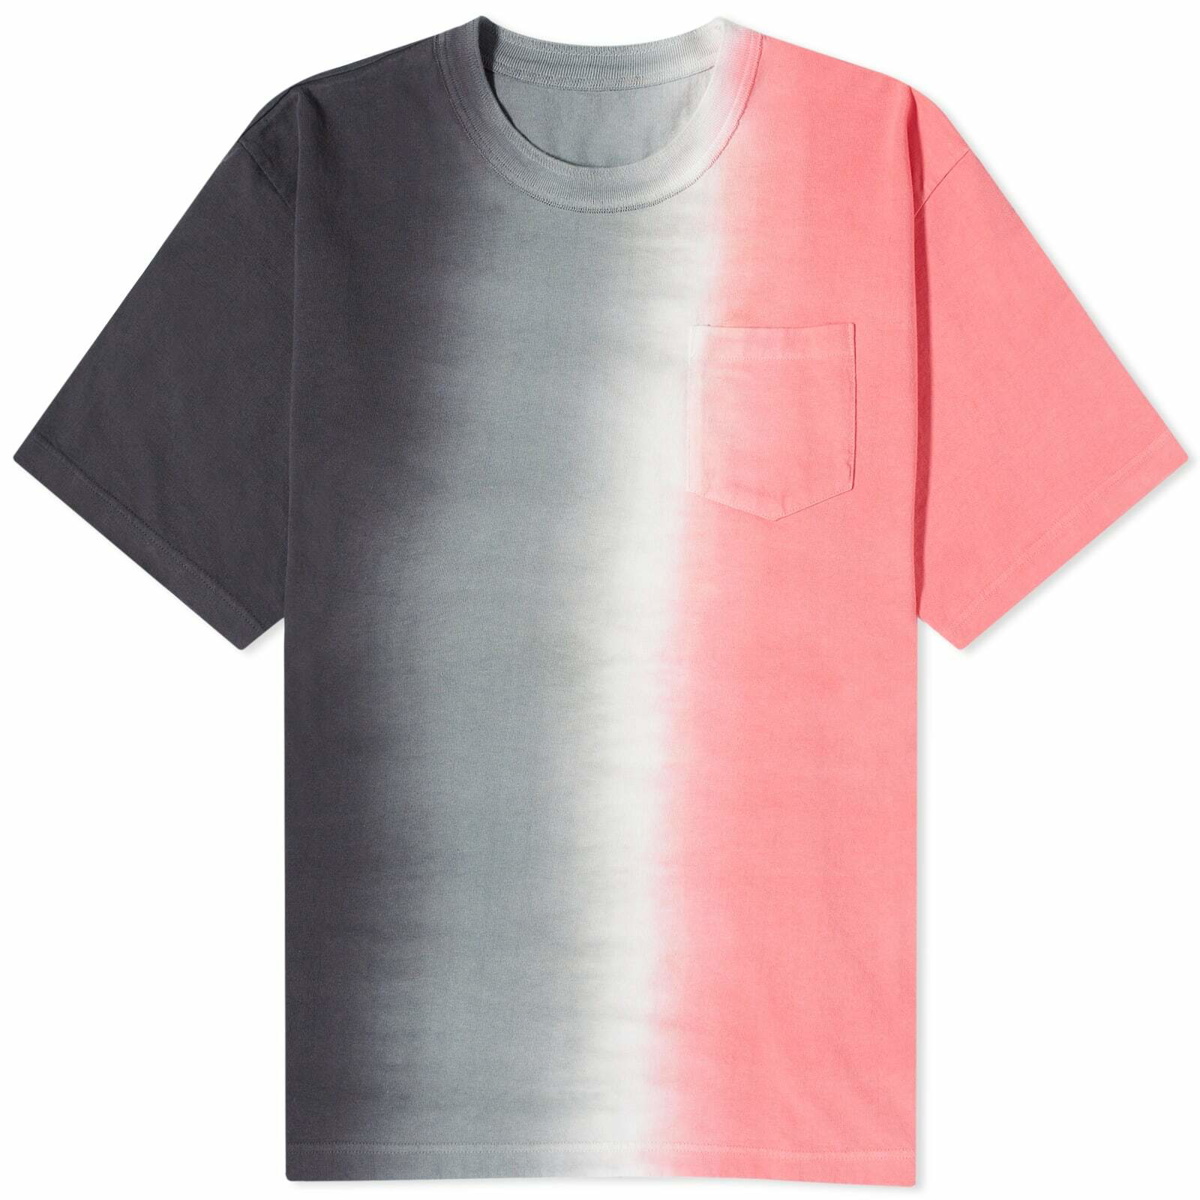 Sacai Men's Tie Dye T-Shirt in Charcoal Grey/Pink Sacai